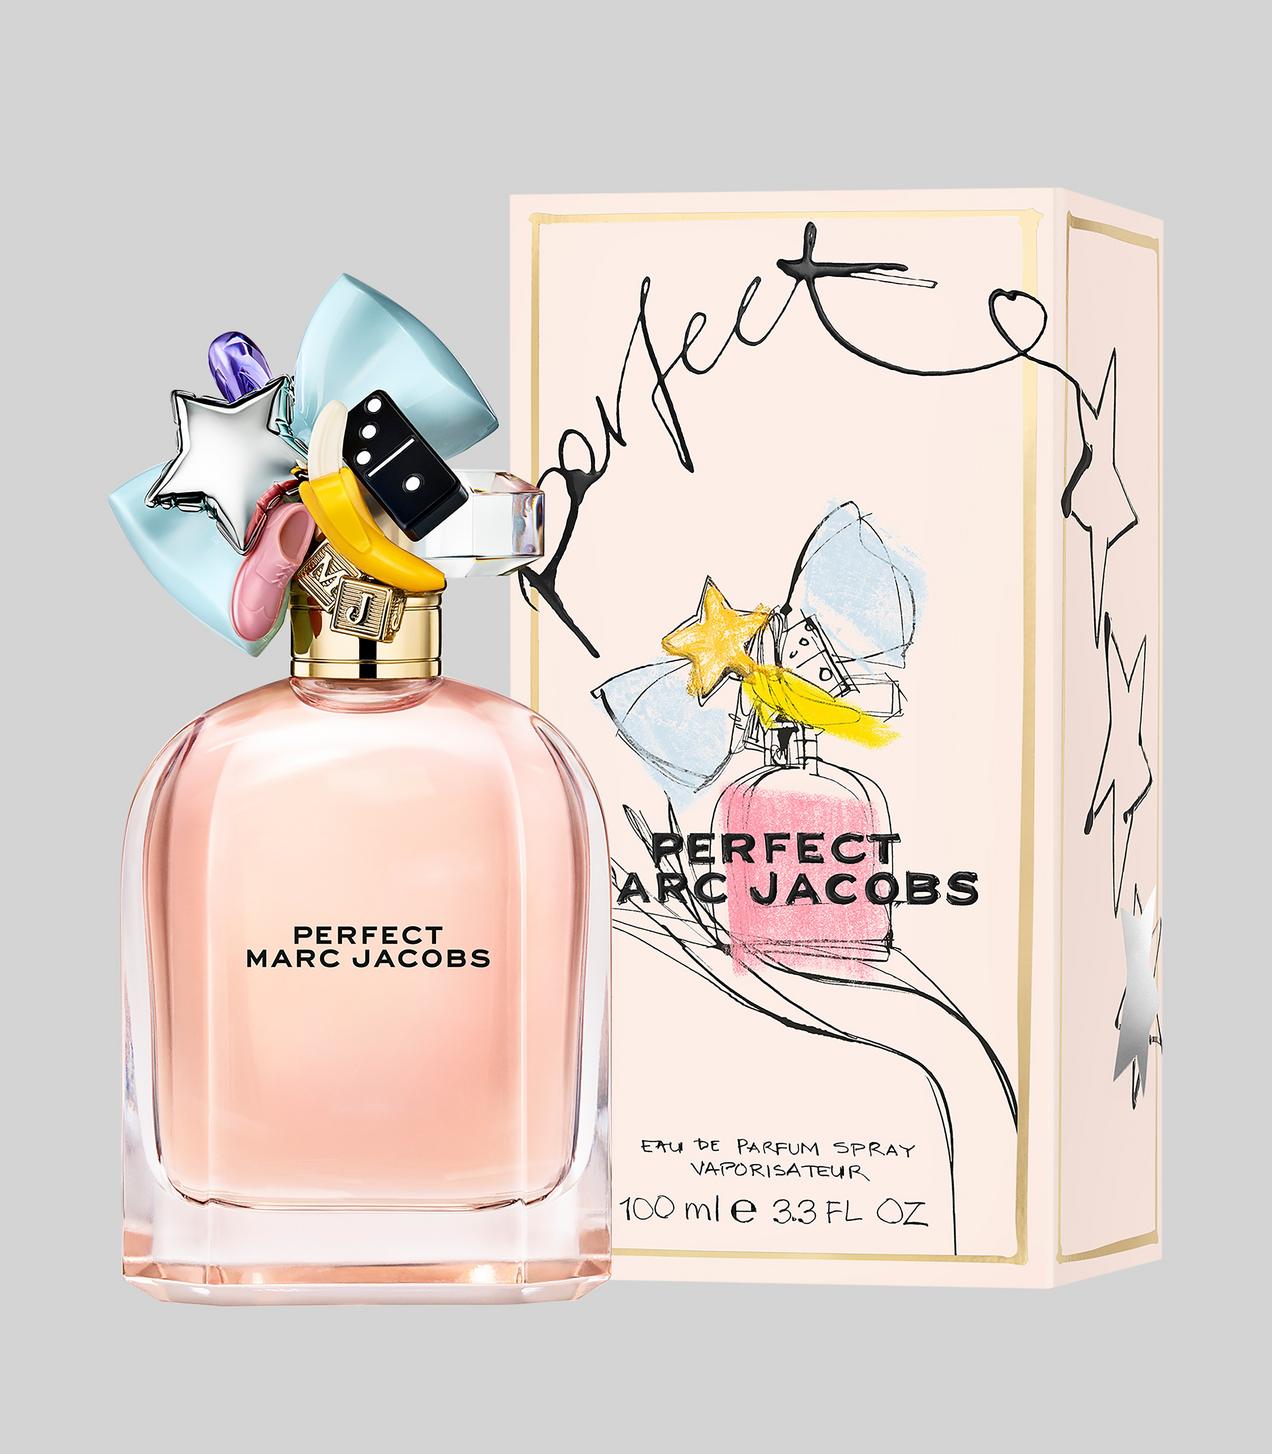 Perfect Marc Jacobs Eau de Parfum 100ml